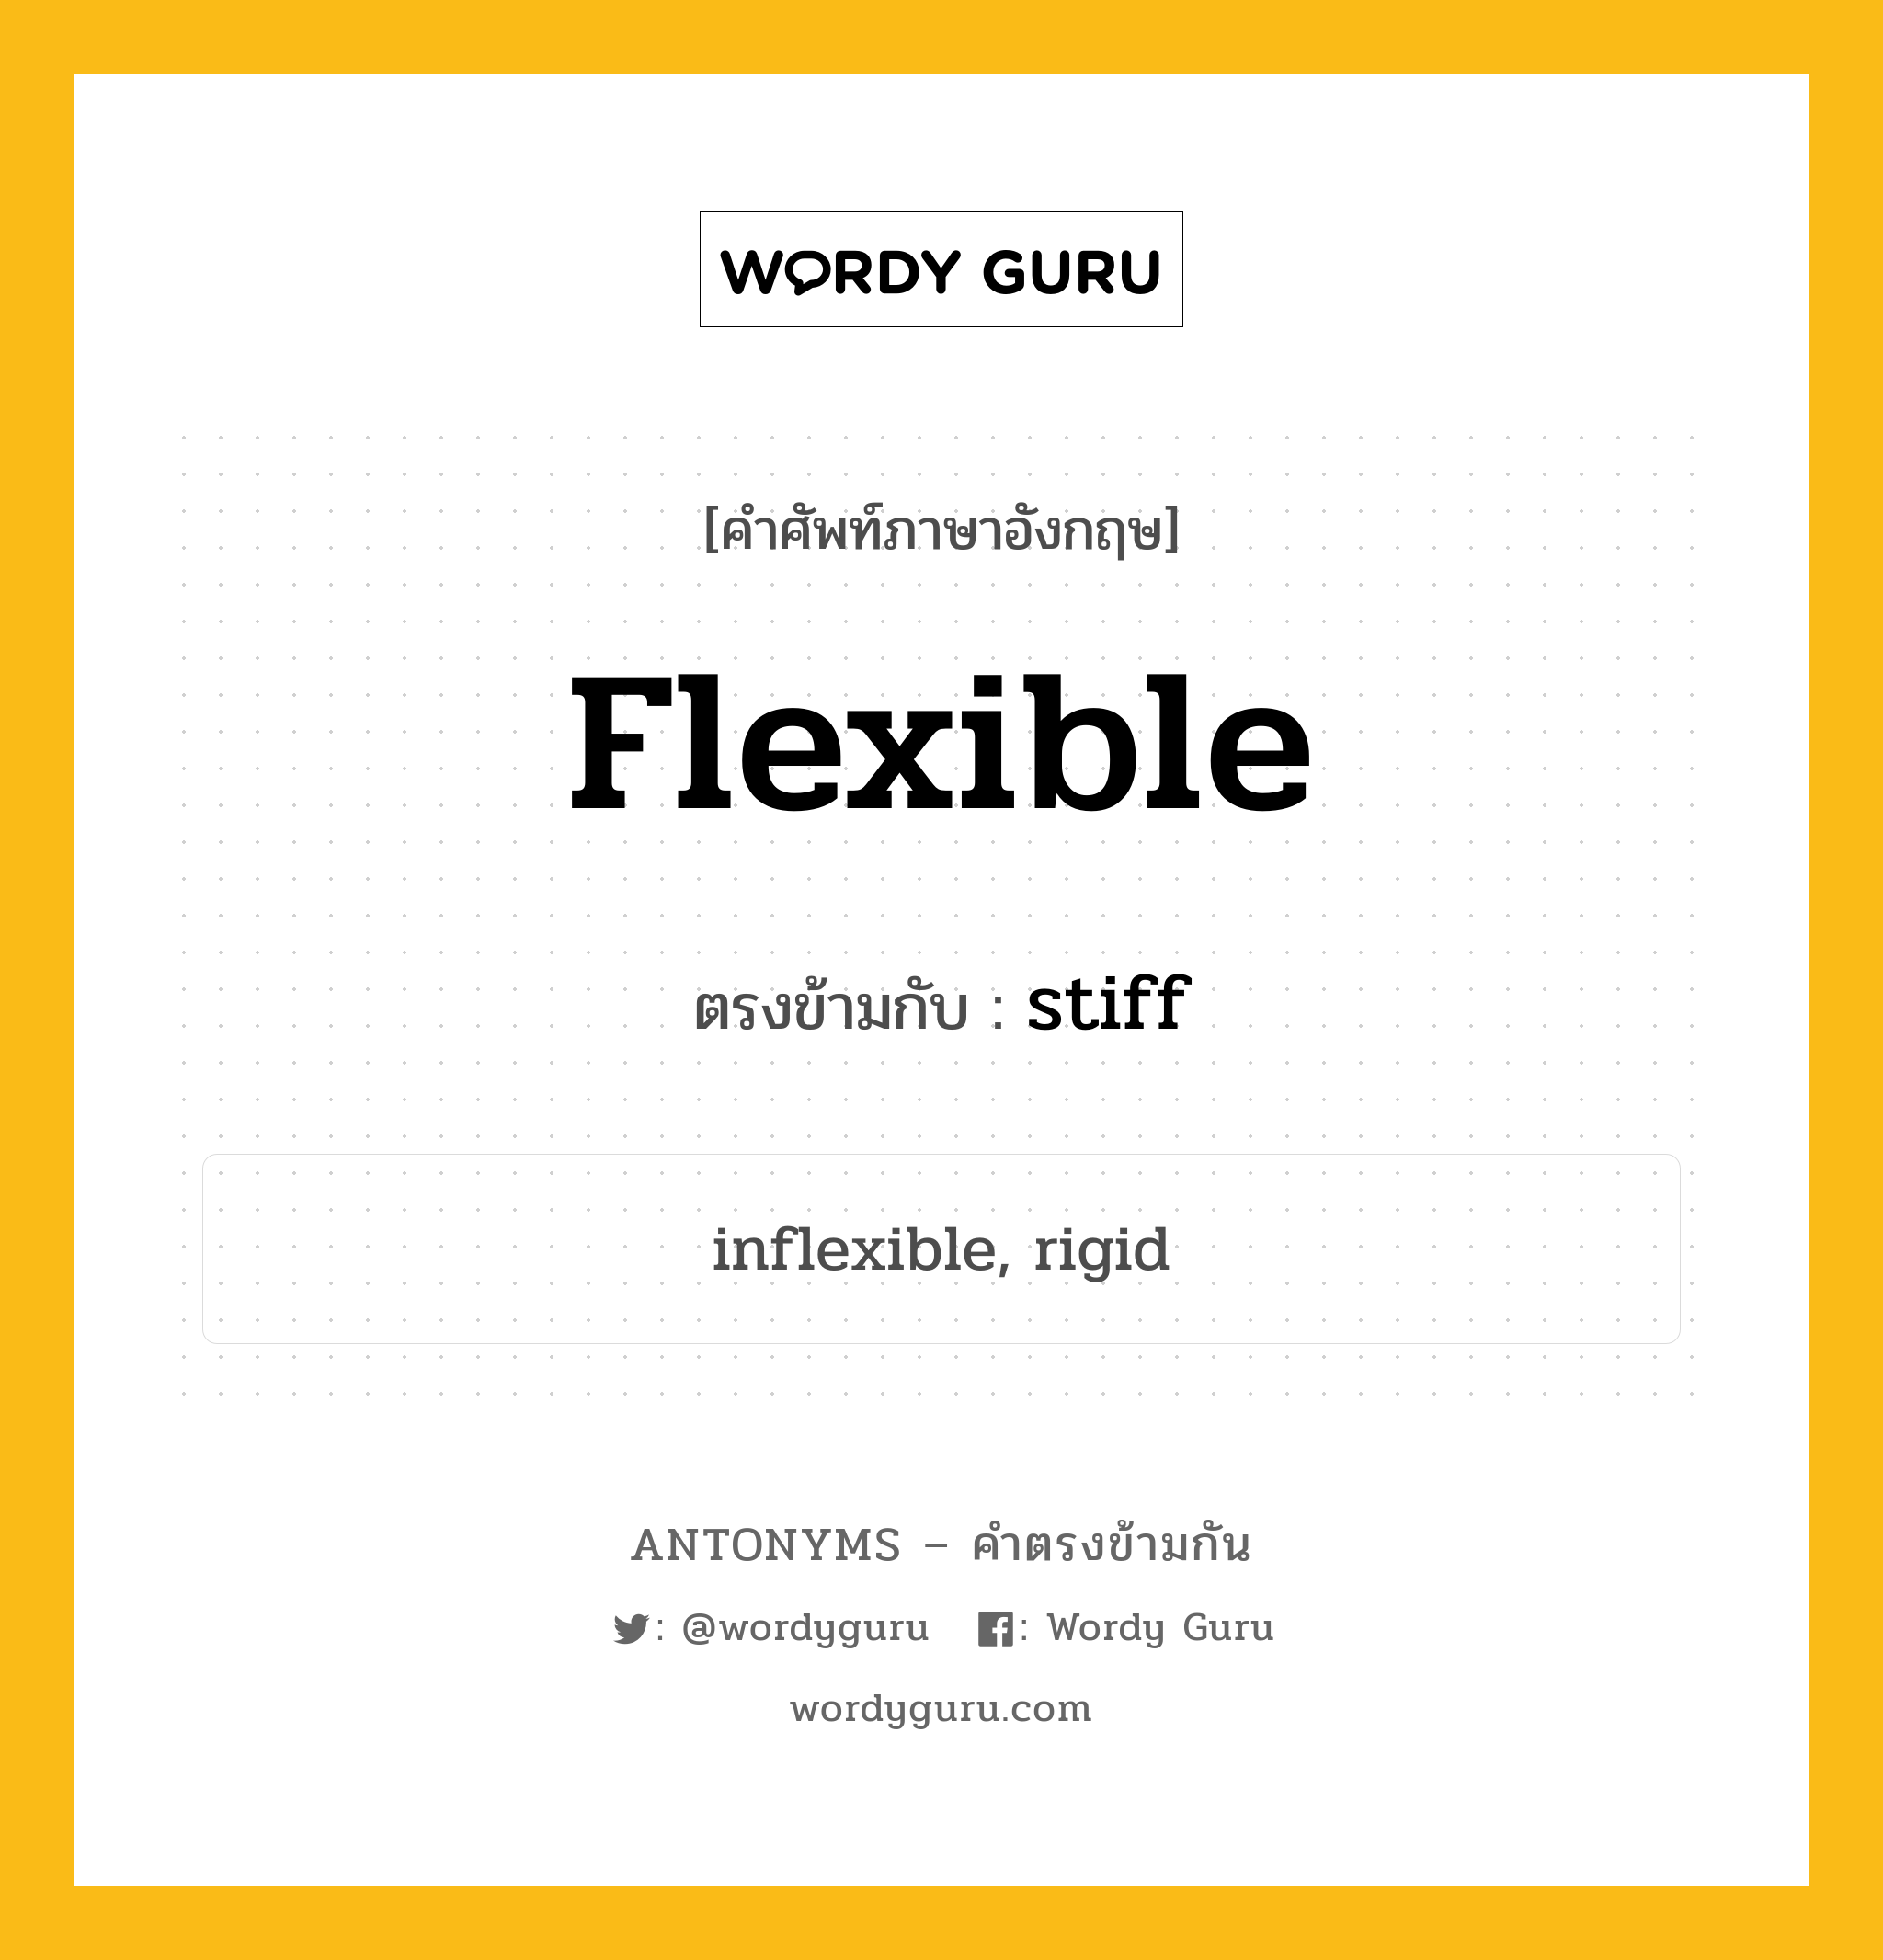 flexible เป็นคำตรงข้ามกับคำไหนบ้าง?, คำศัพท์ภาษาอังกฤษ flexible ตรงข้ามกับ stiff หมวด stiff